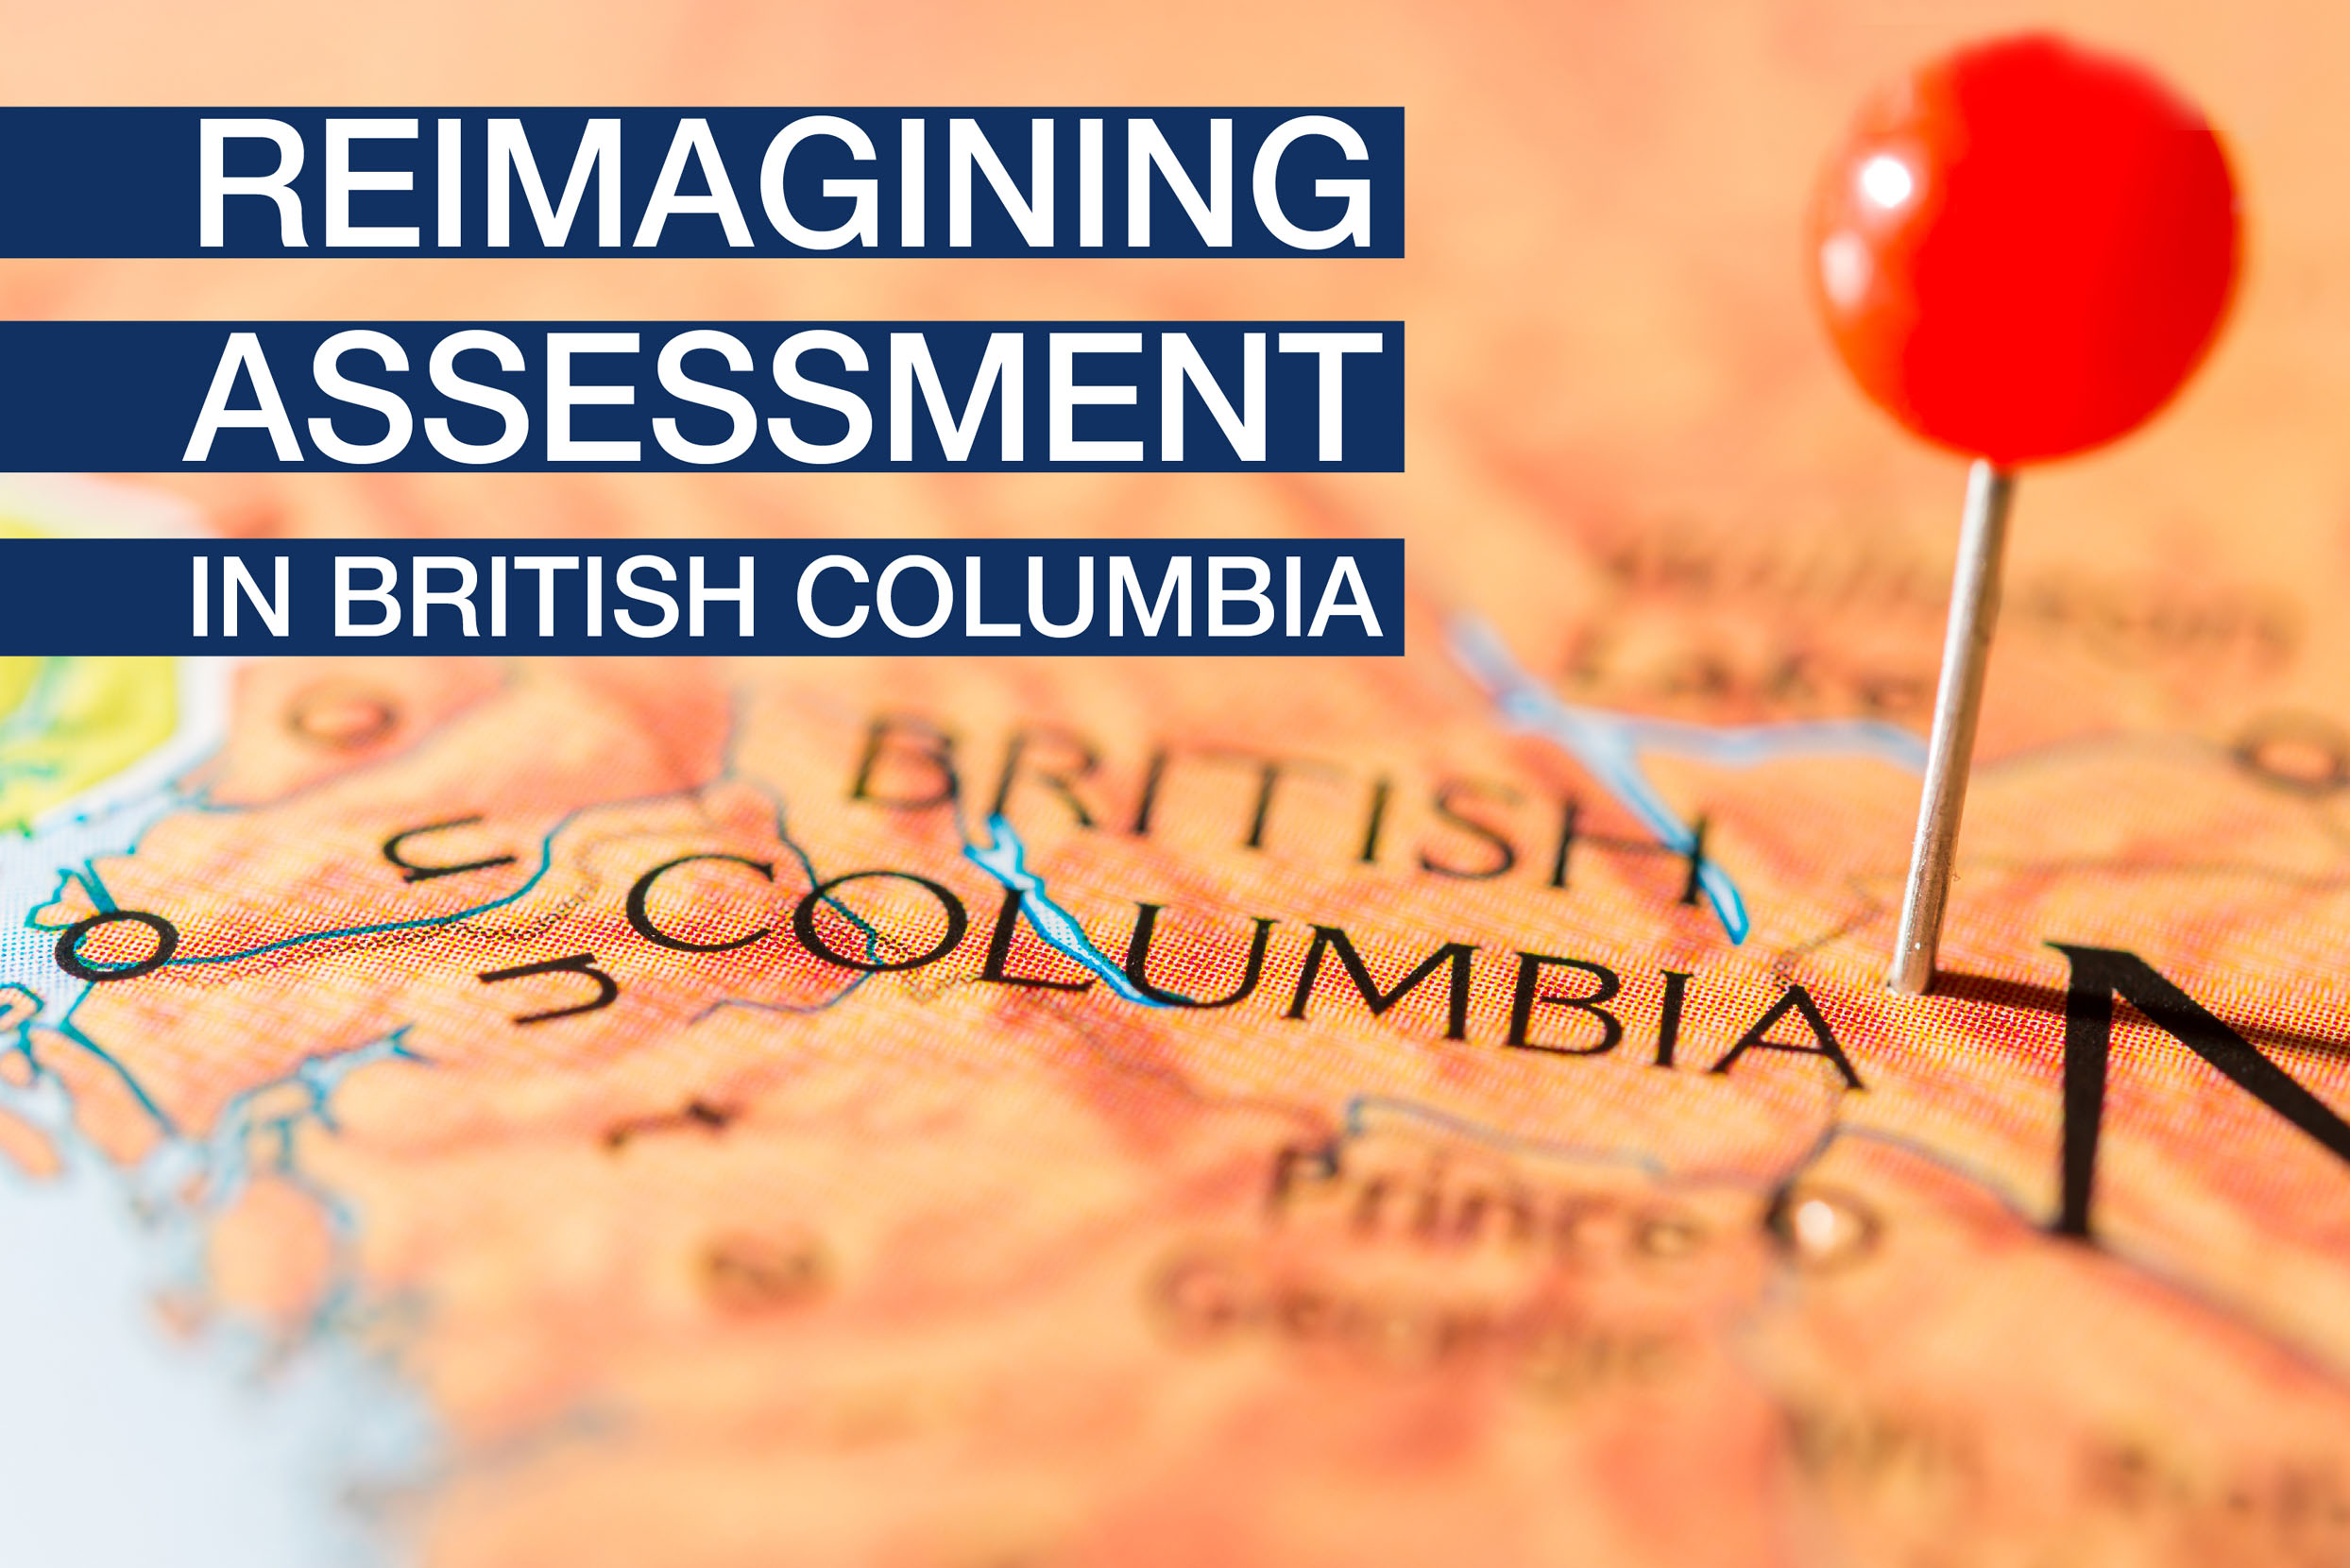 Reimagining Assessment in British Columbia